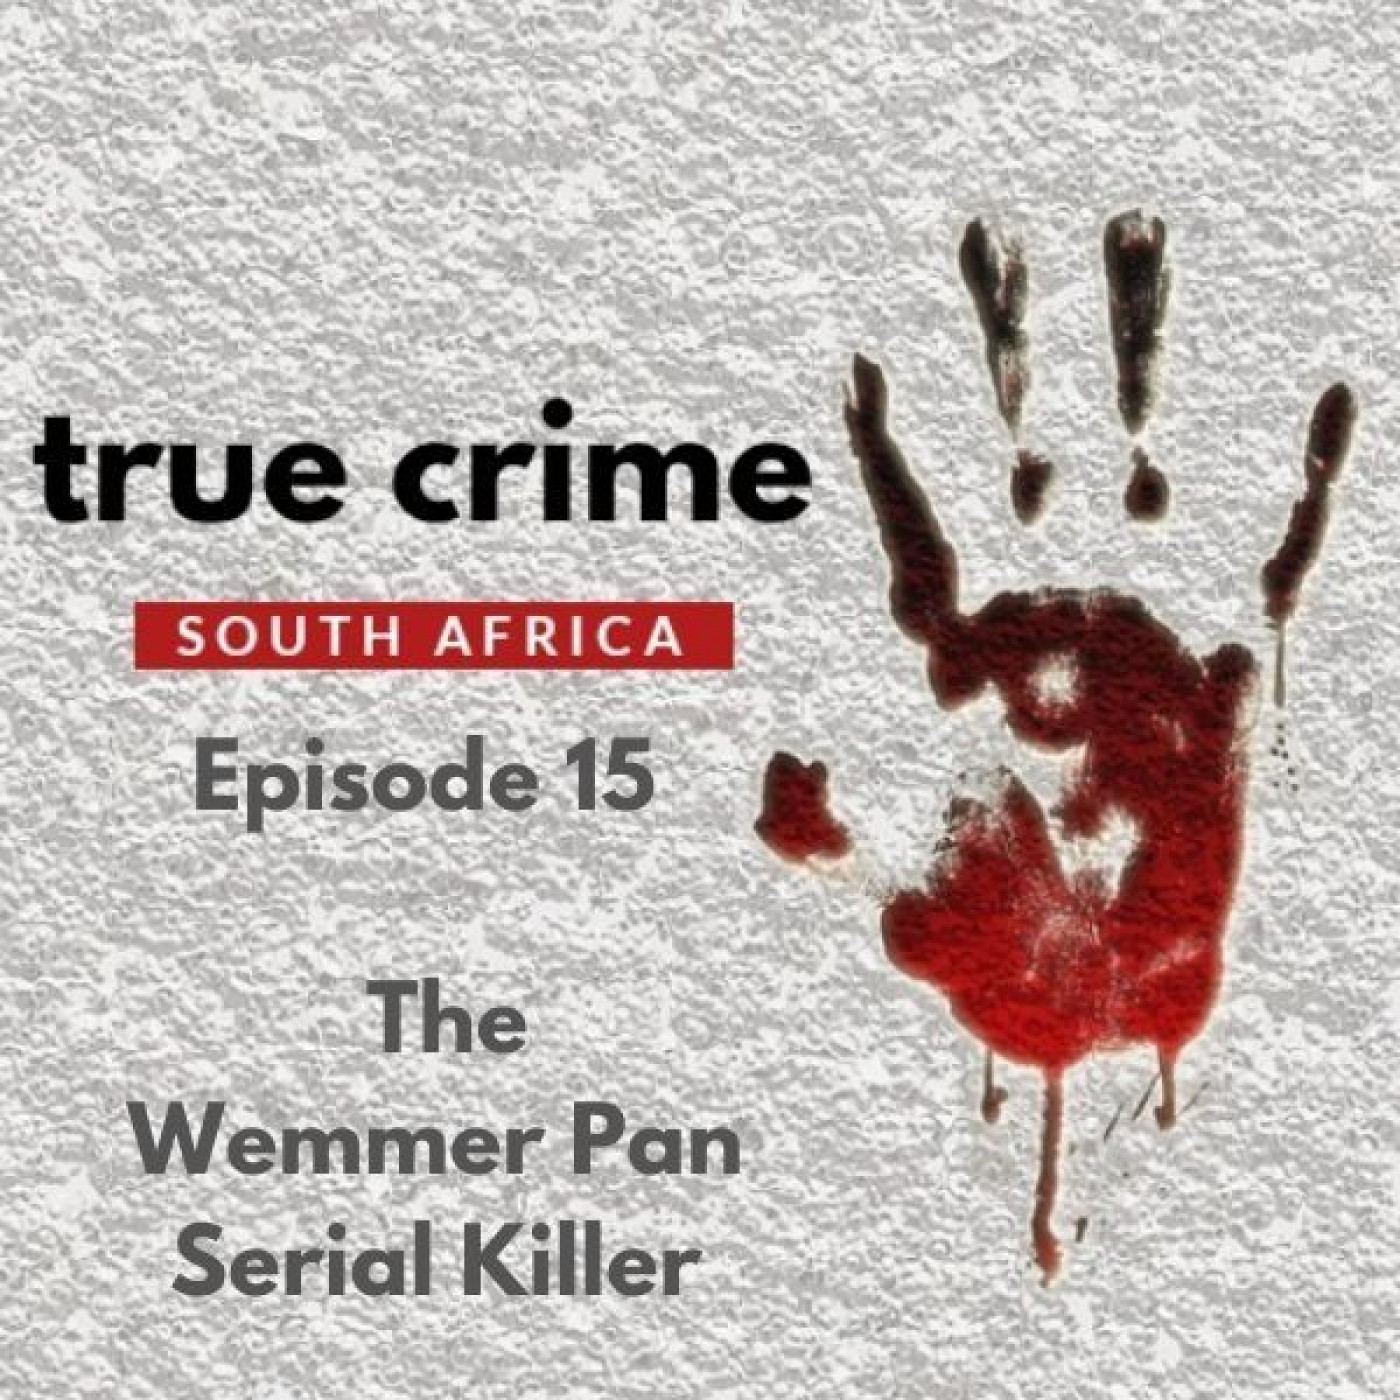 Episode 15 - The Wemmer Pan Serial Killer